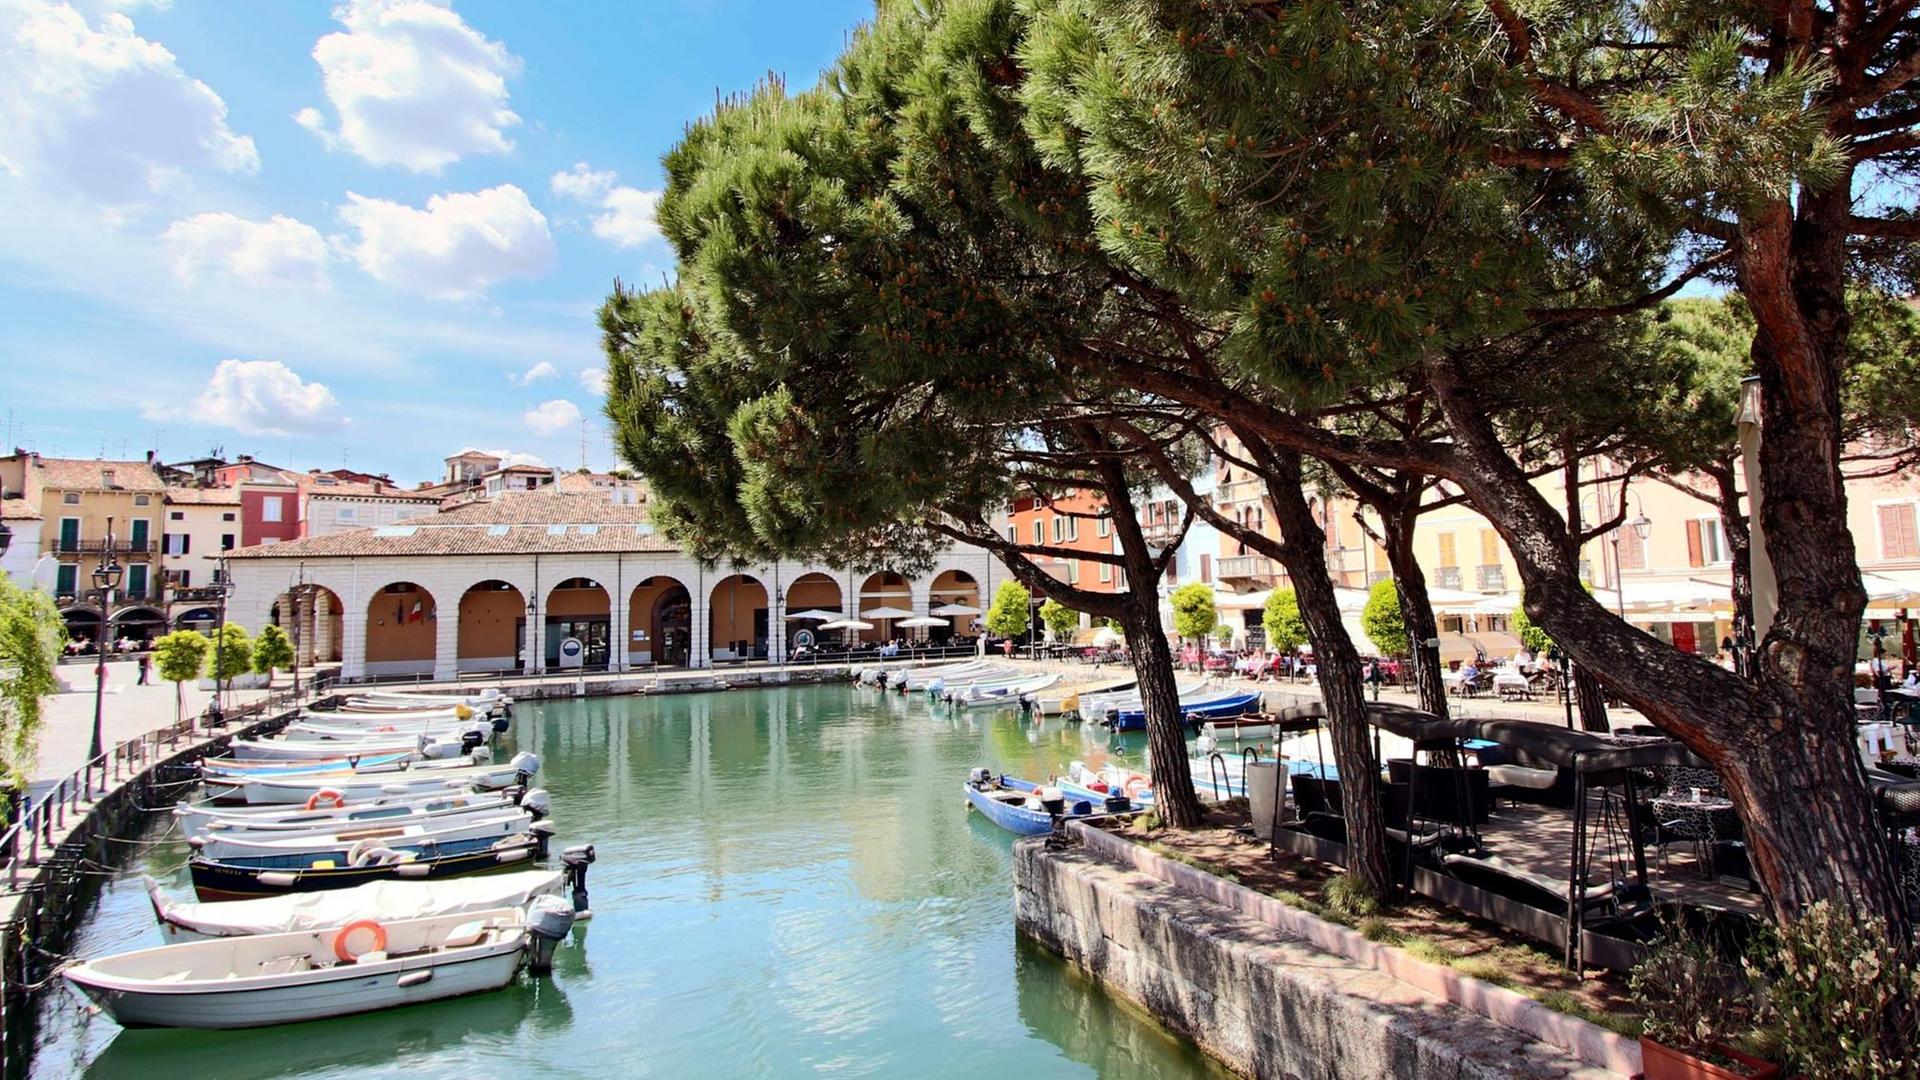 Uferpromenade mit Booten im historischen Hafen von Desenzano am Lago di Garda, Gardasee, Provinz Brescia, Region Lombardei.